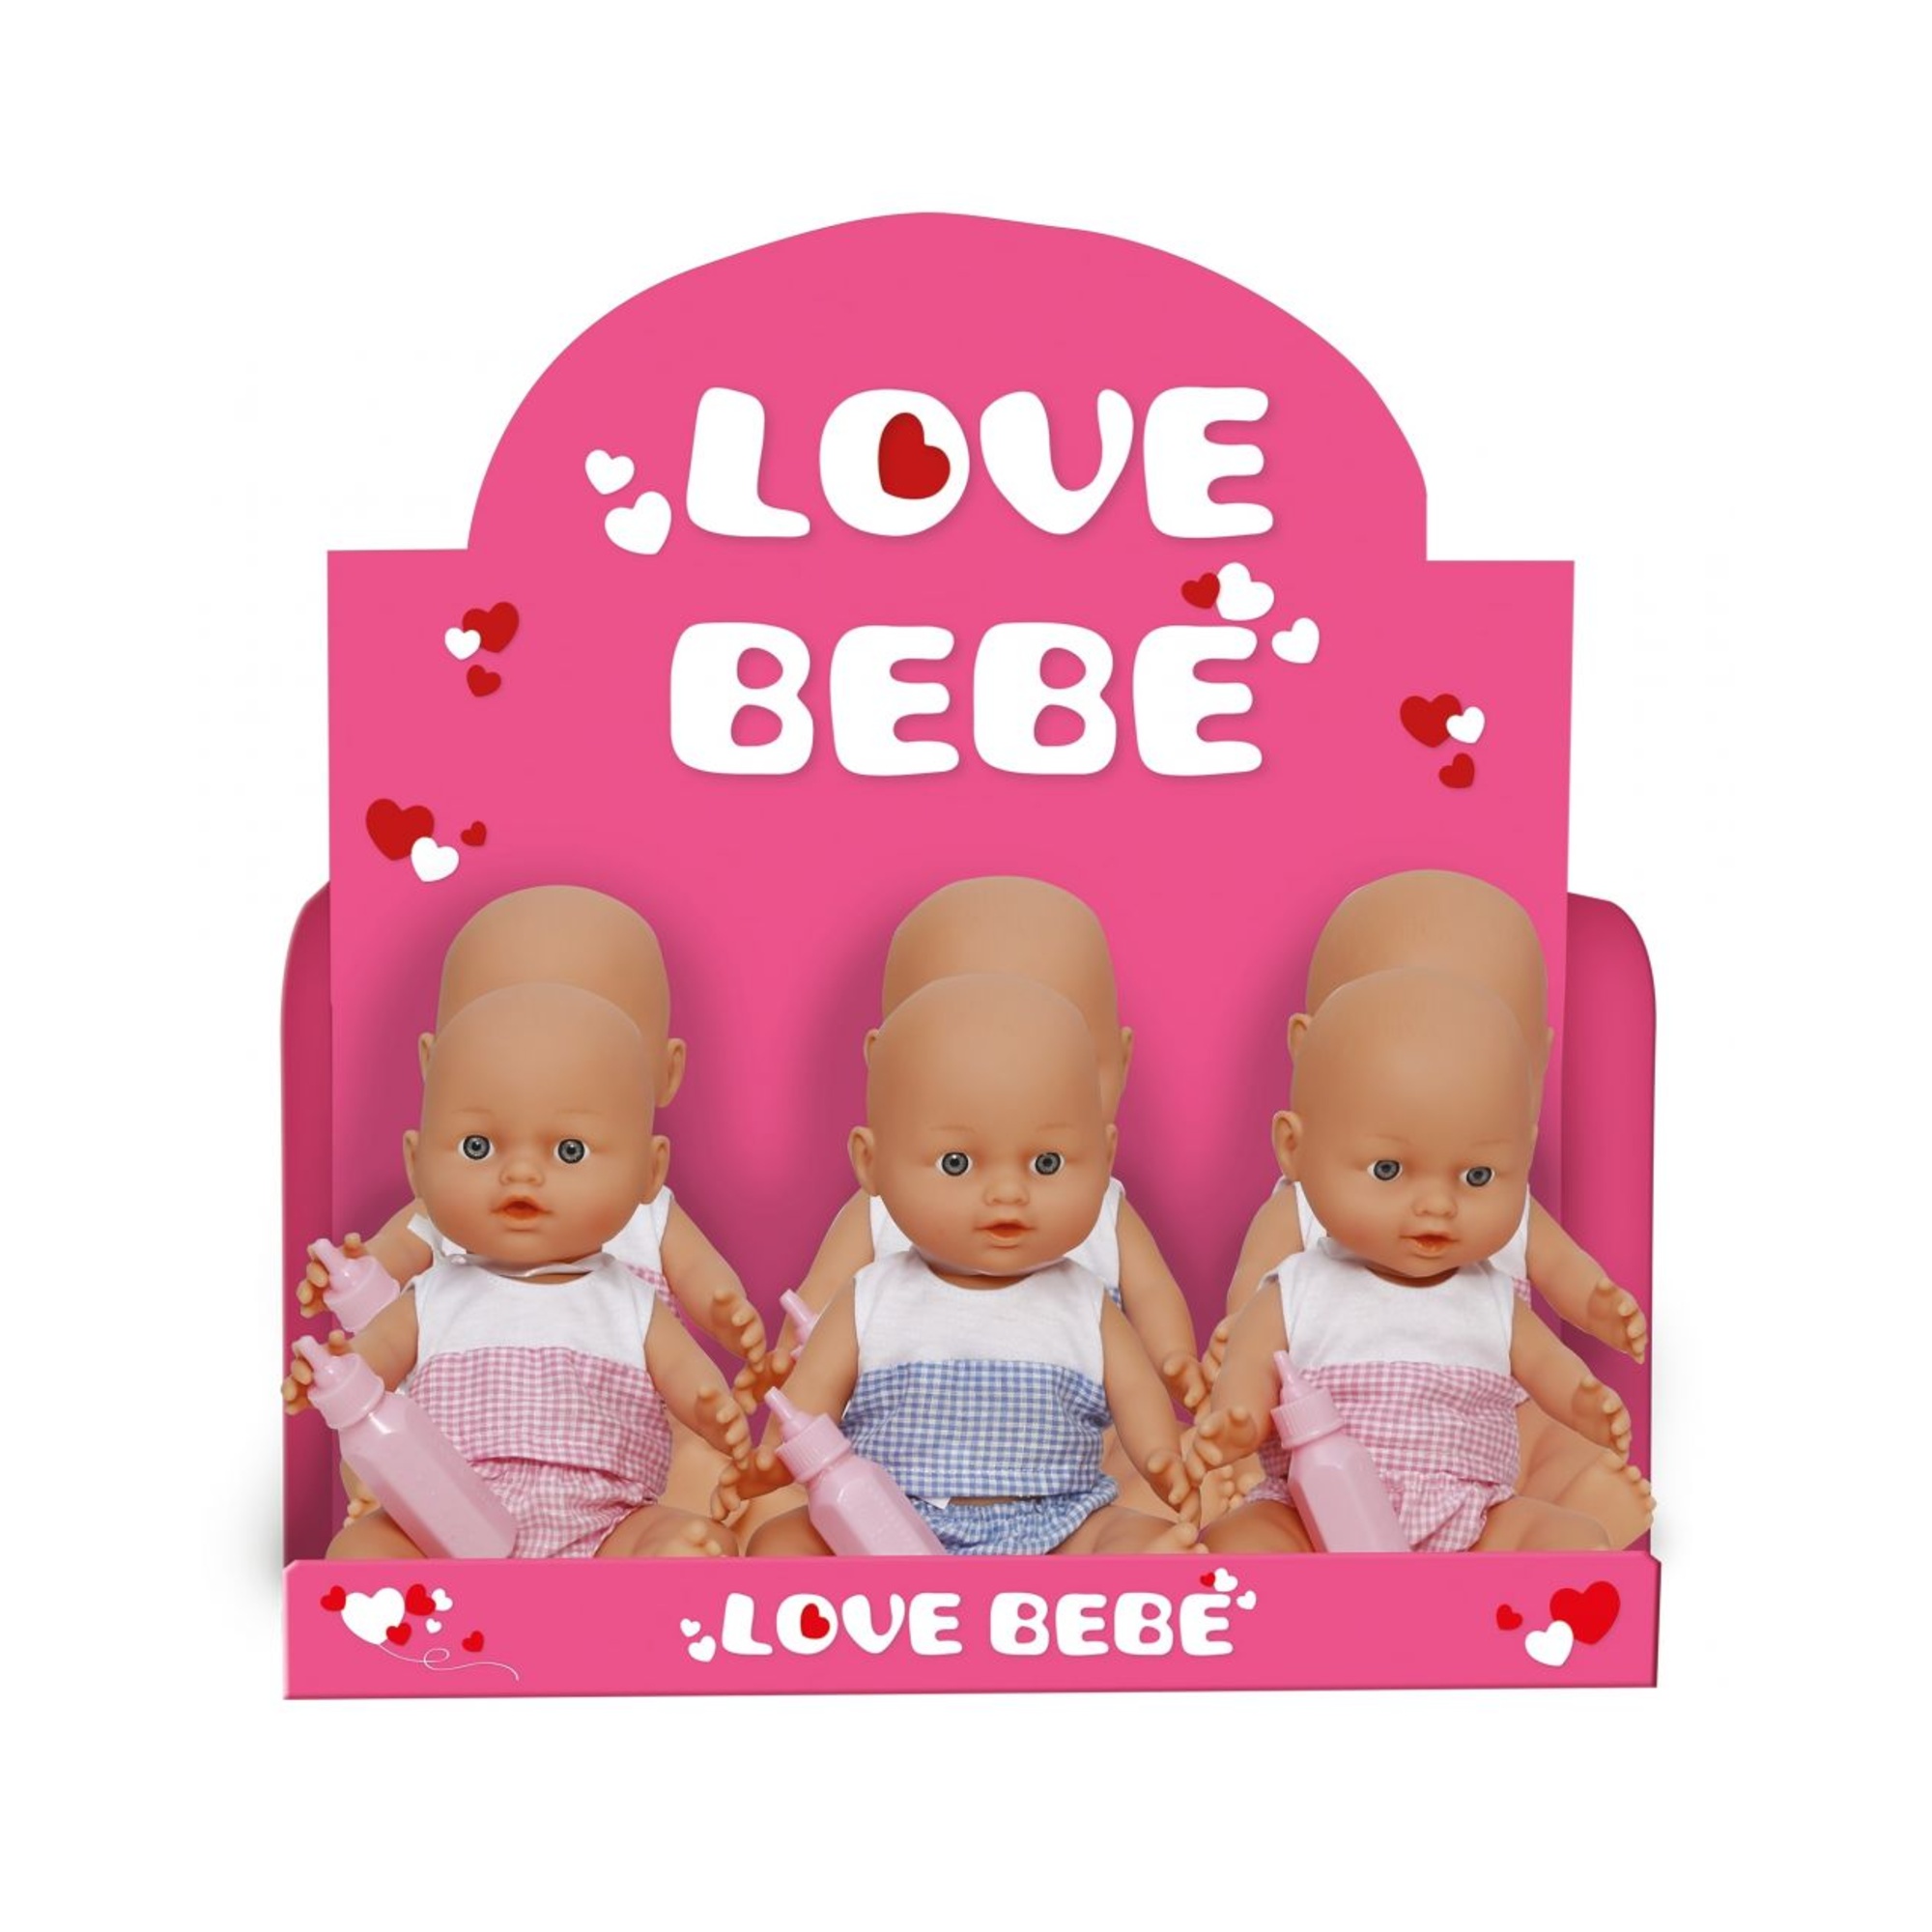 Piccolo bebé - love bebé - LOVE BEBE'